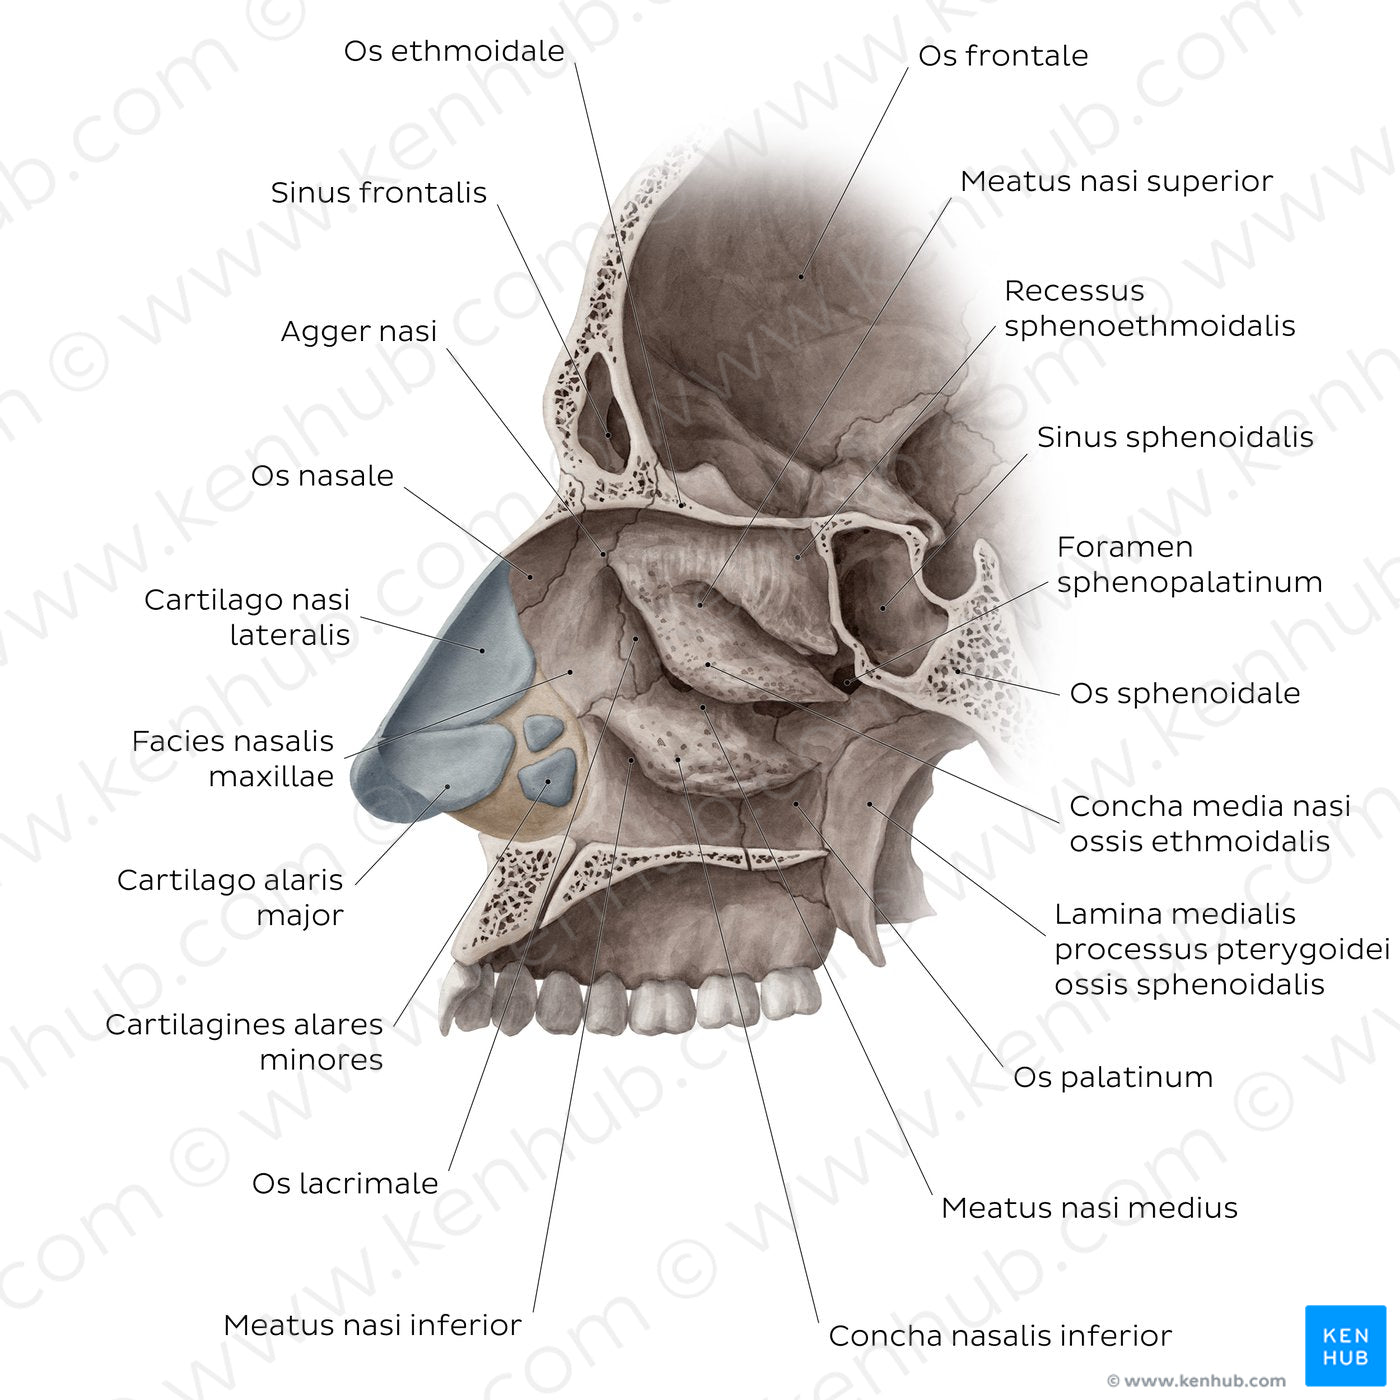 Lateral wall of the nasal cavity (Latin)